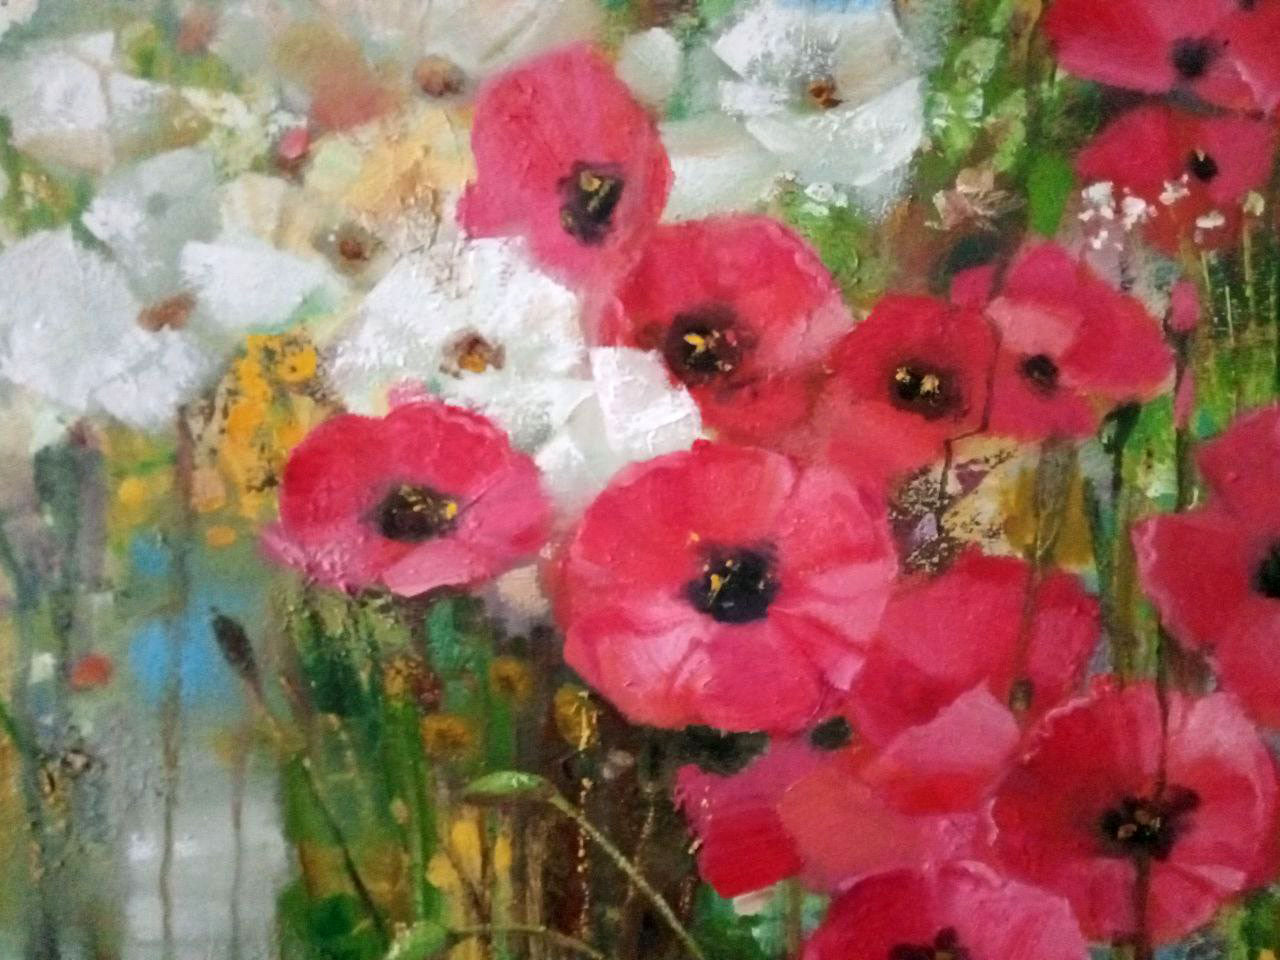 Abstract oil painting Poppies Anatoly Borisovich Tarabanov